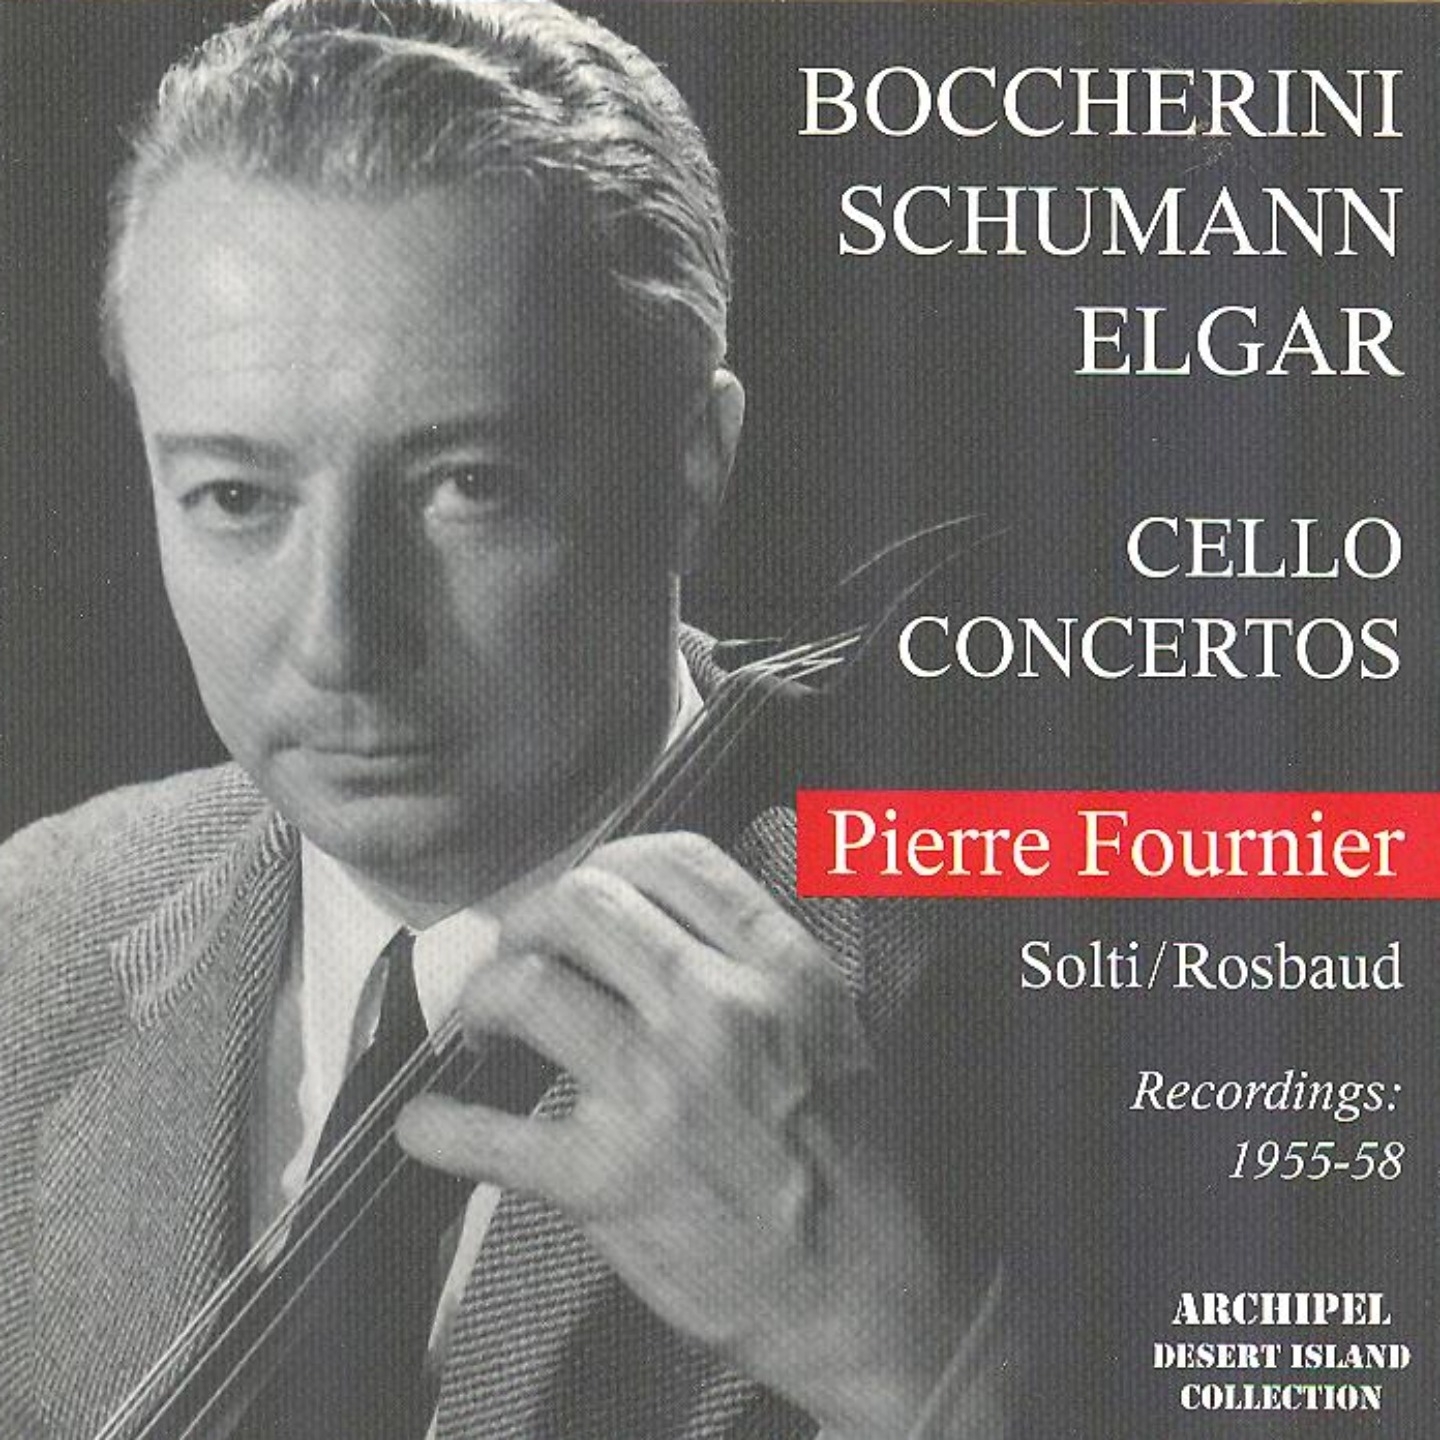 Boccherini, Schumann & Elgar: Cello Concertos (Recordings 1955-58)